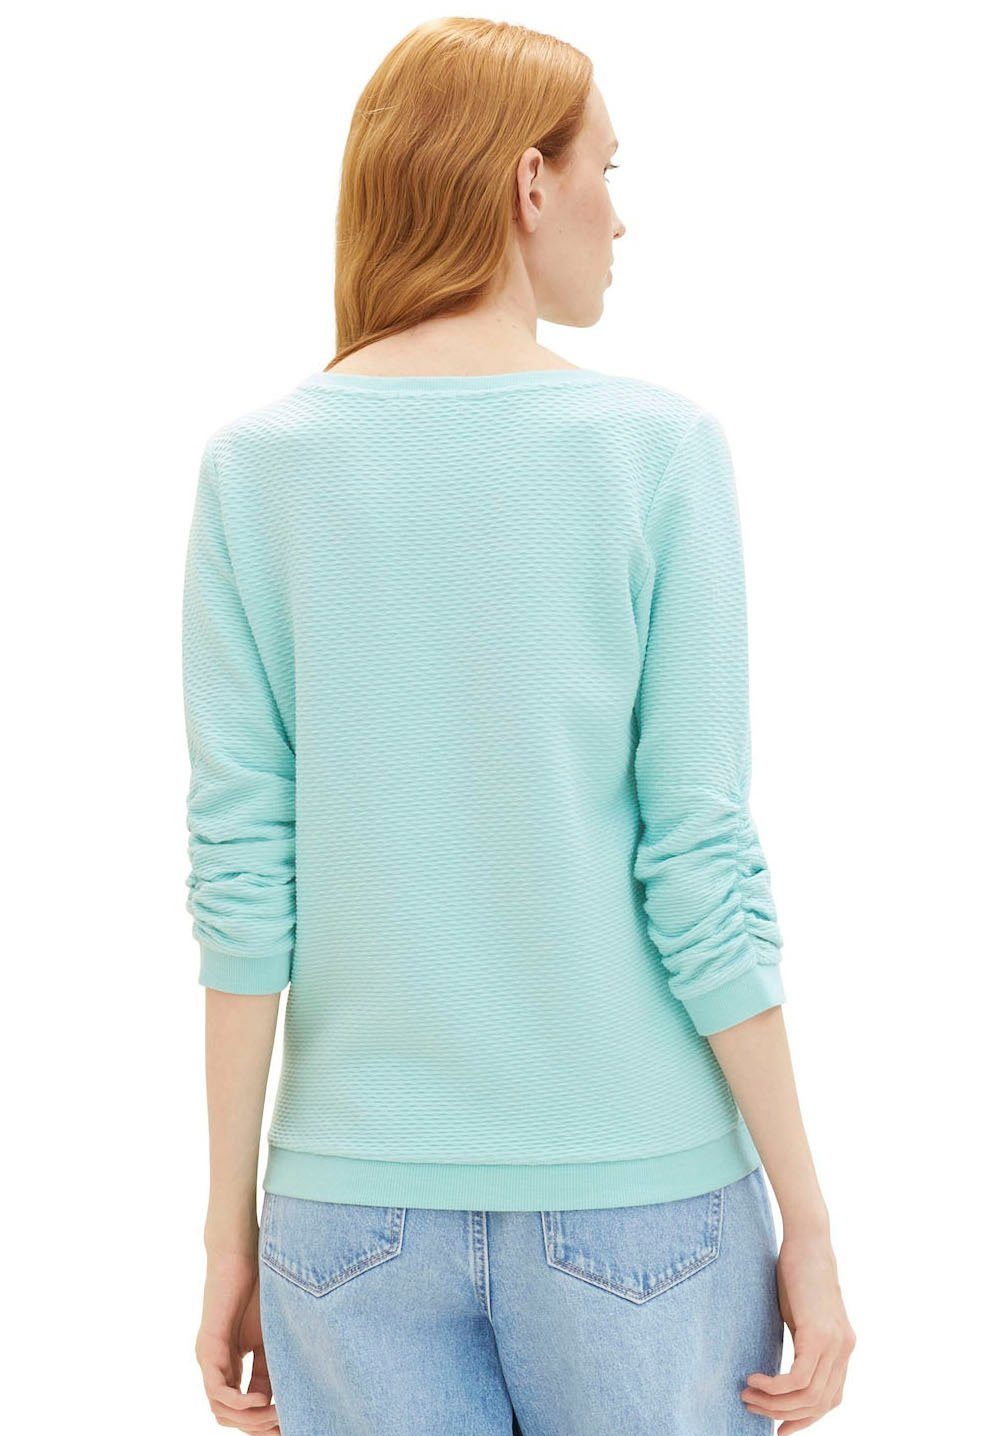 Materialoberfläche Denim turquoise pastel Sweatshirt besonderer TAILOR TOM mit